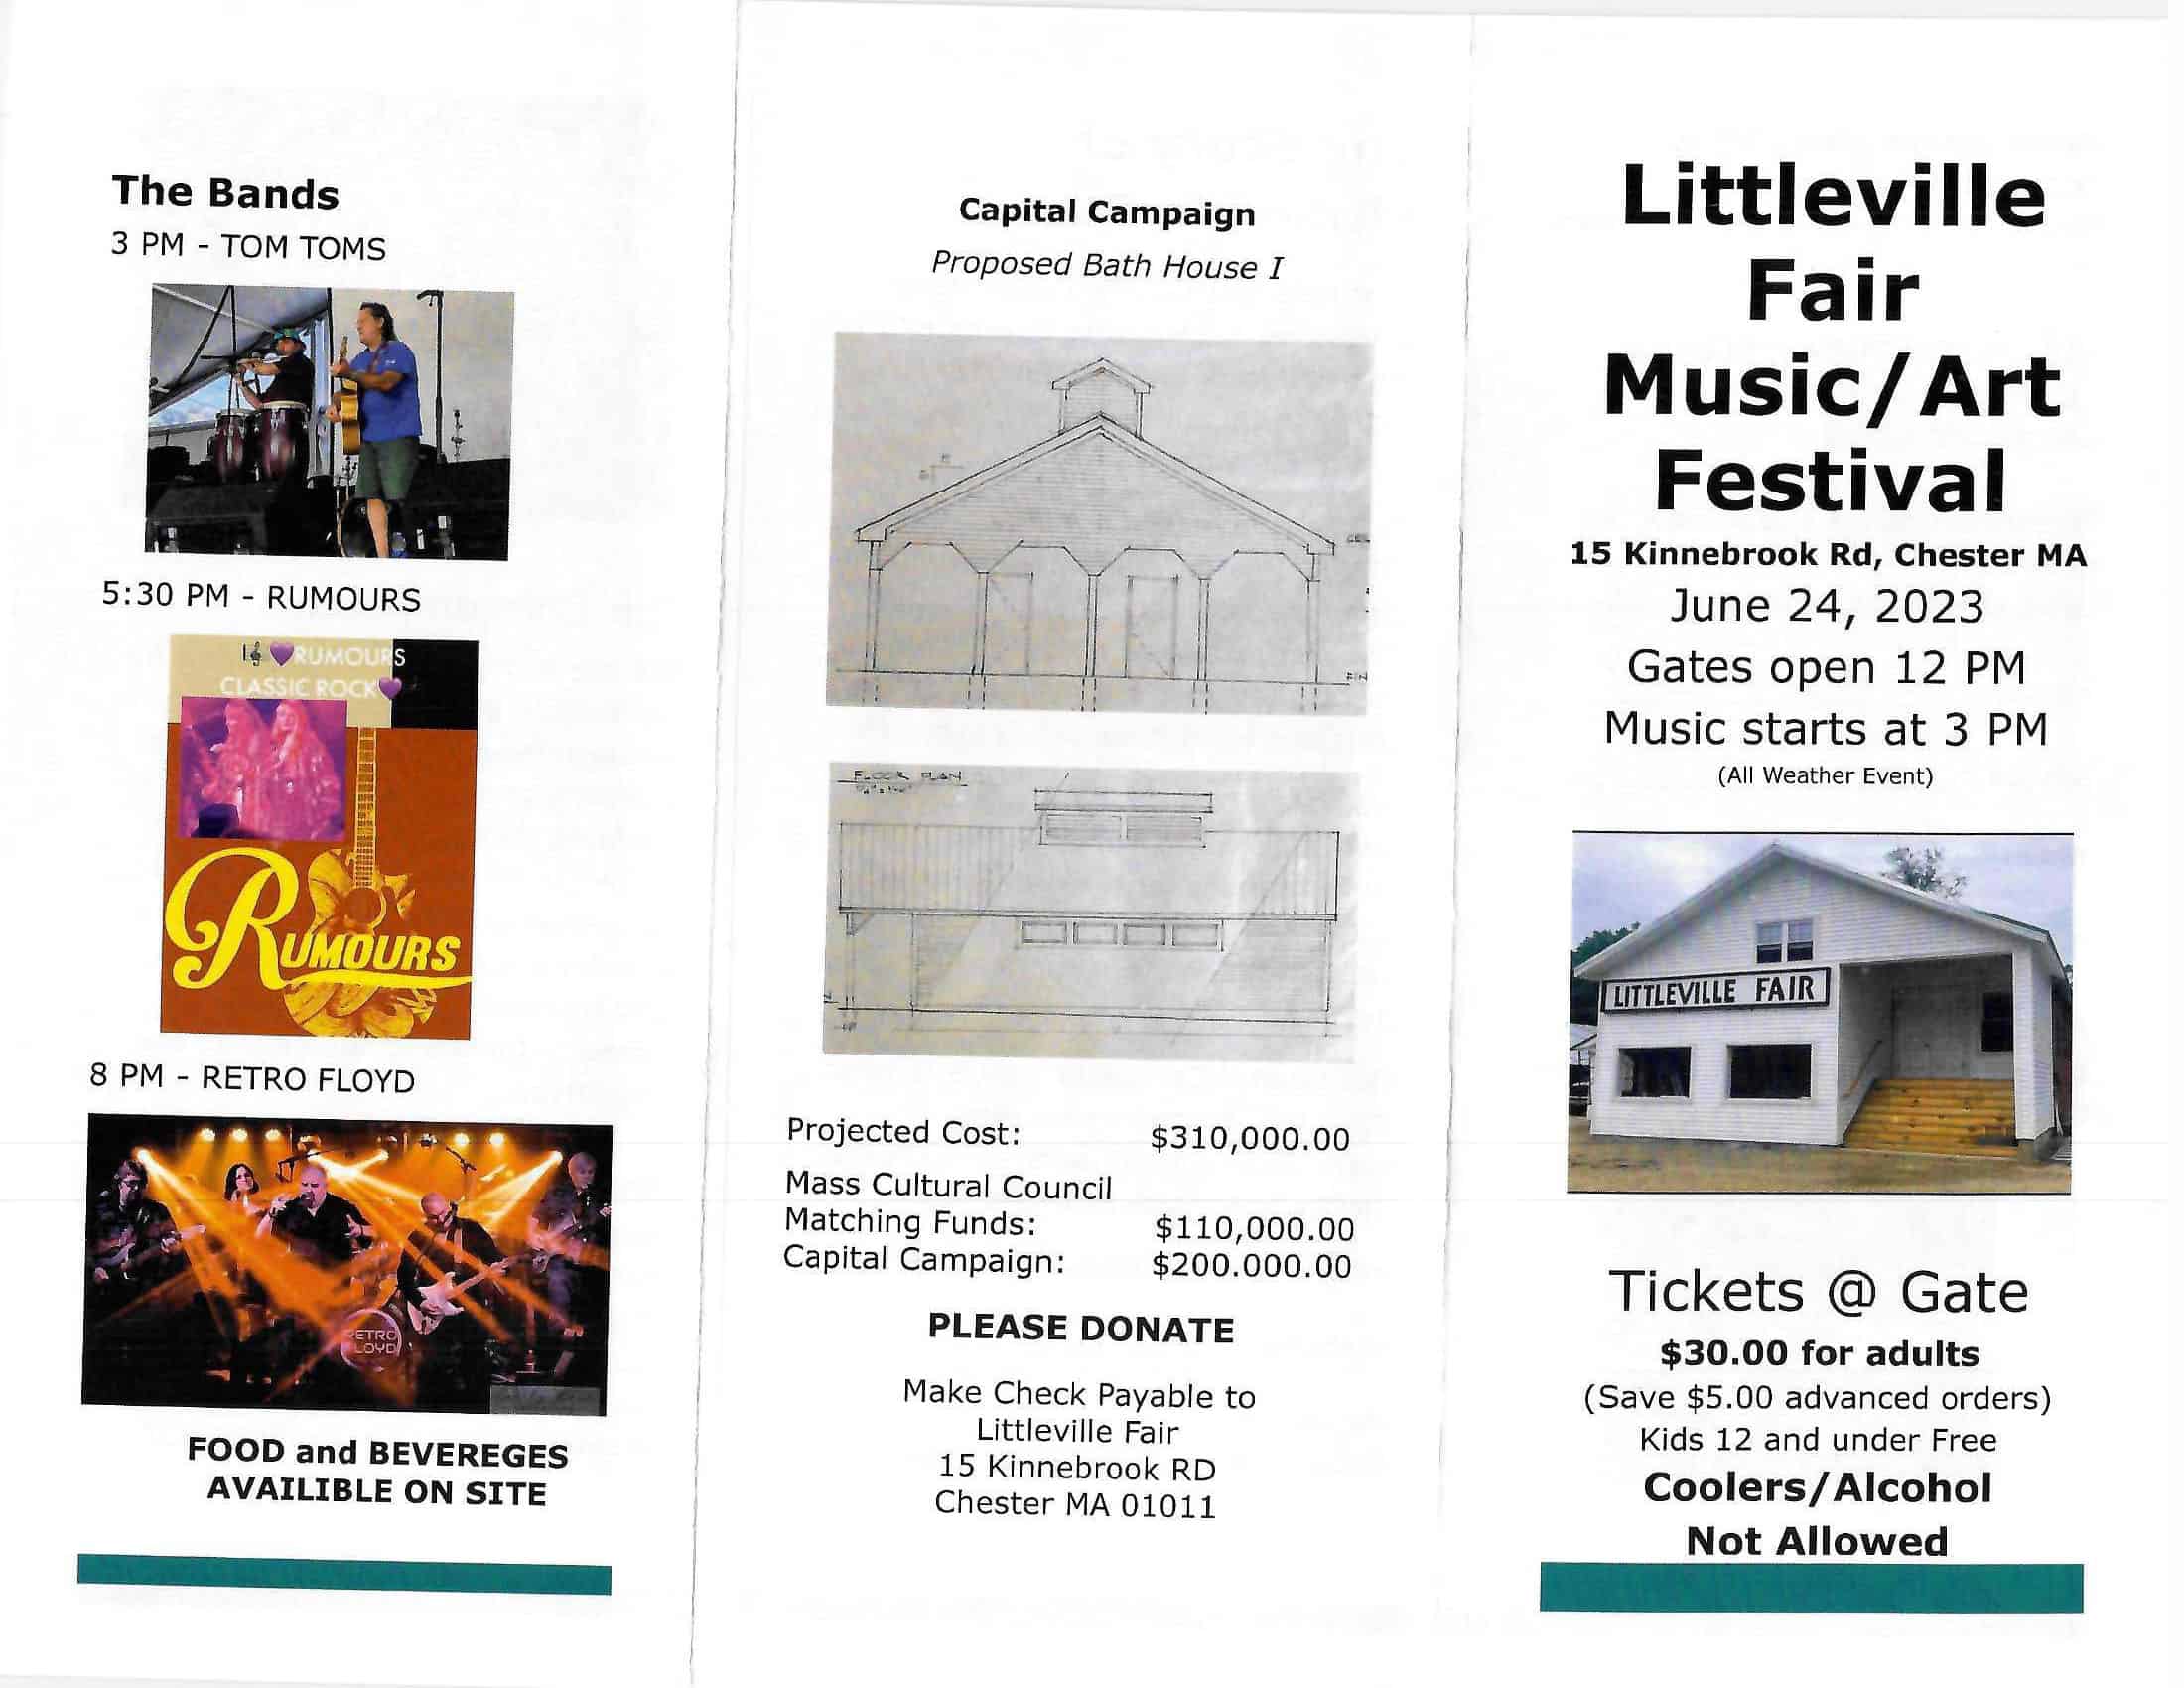 Littleville Fair Music/Art Fundraiser